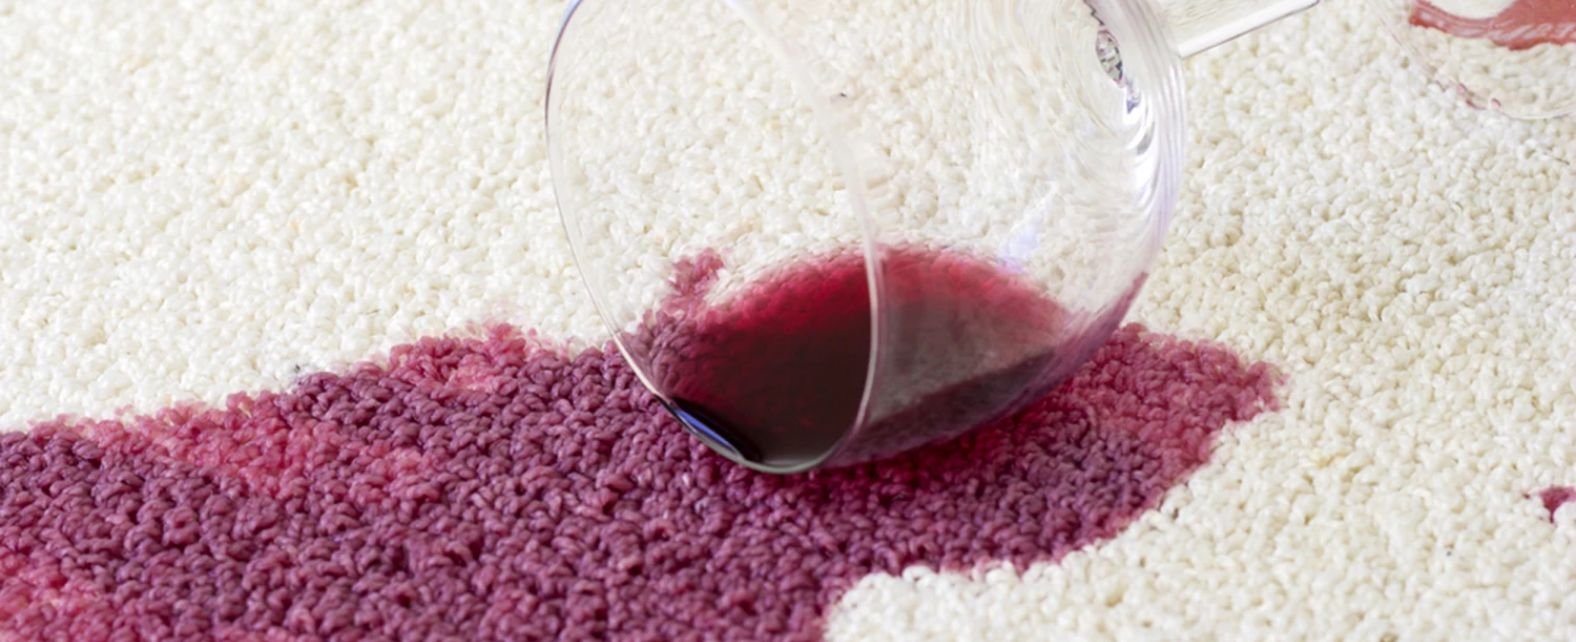 Tache de vin rouge sur un tapis blanc